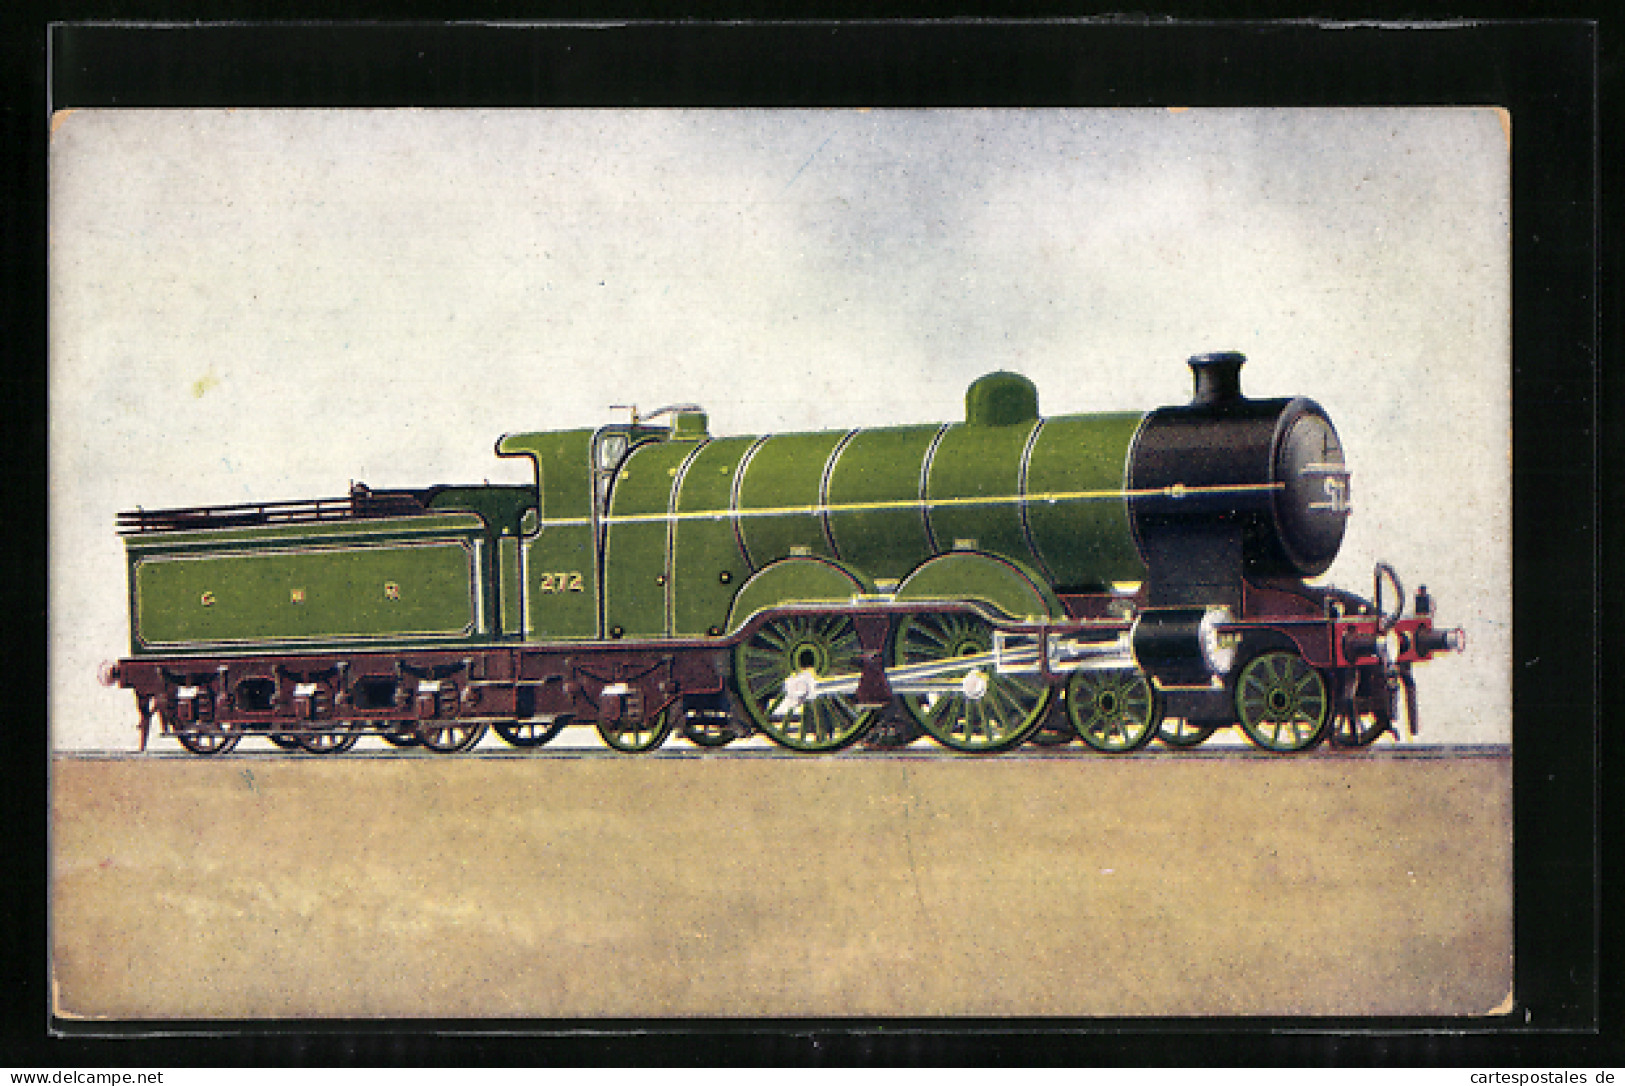 Pc Englische Eisenbahn Express Passenger Engine 272, GNR  - Trains